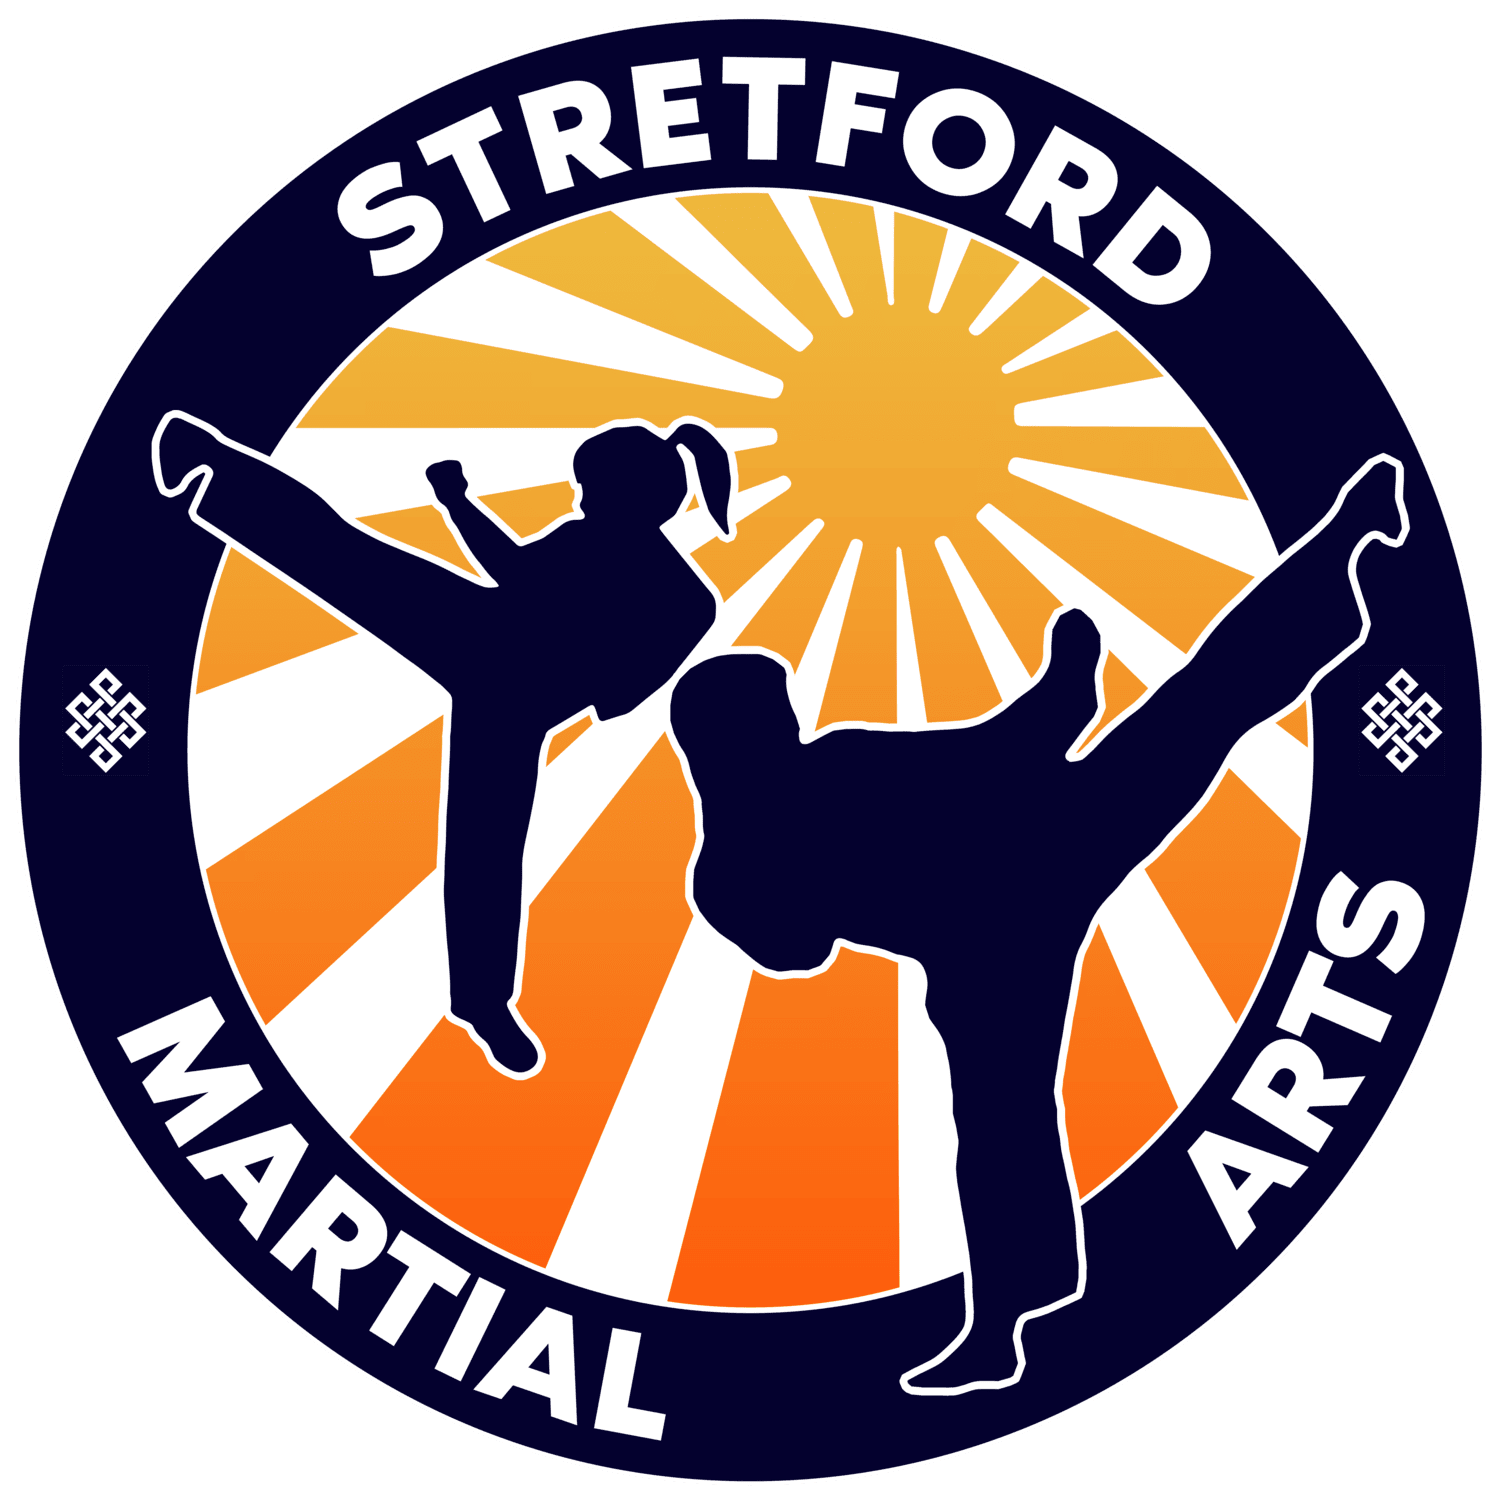 Stretford Martial Arts